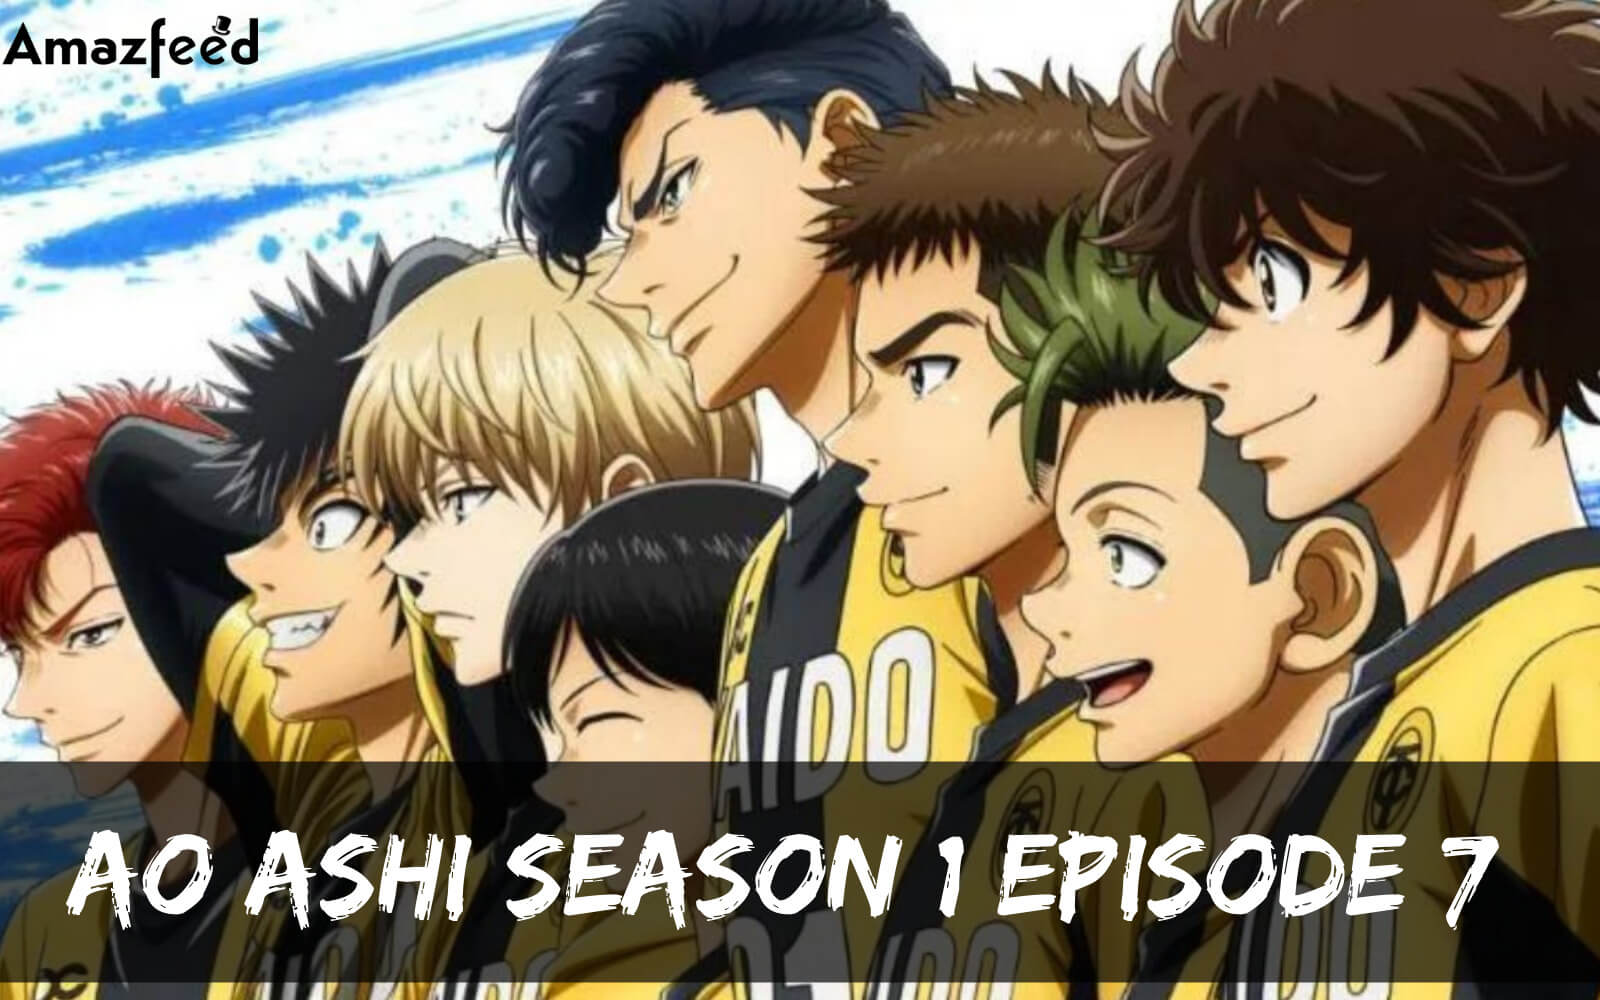 Ao Ashi Season 1 Episode 7 release date